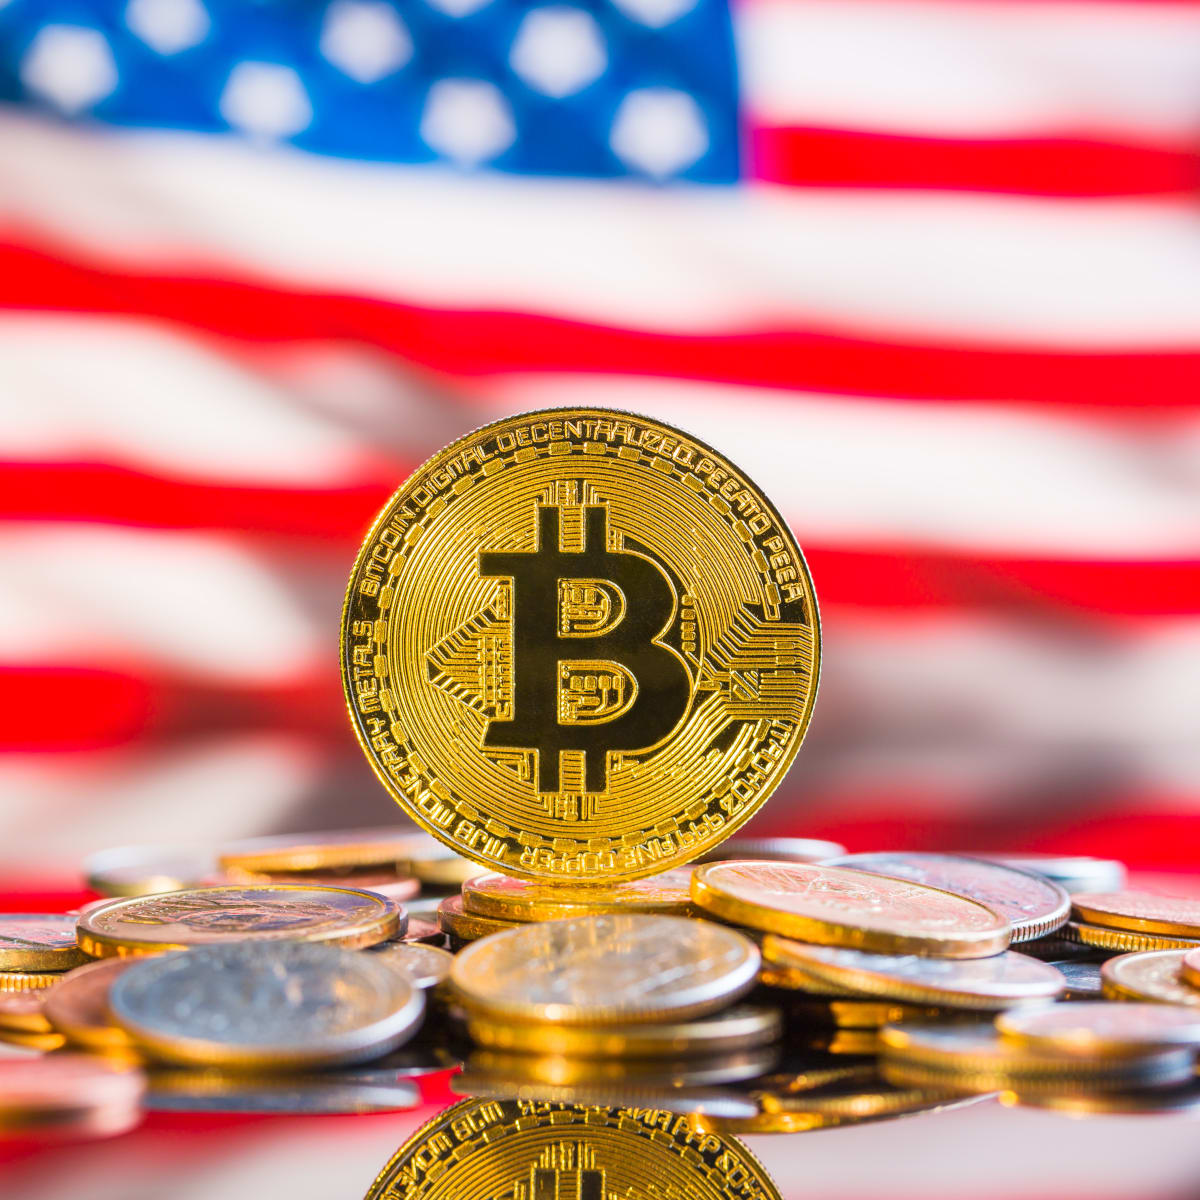 Convert 1 BTCF to USD - Bitcoin Future price in USD | CoinCodex